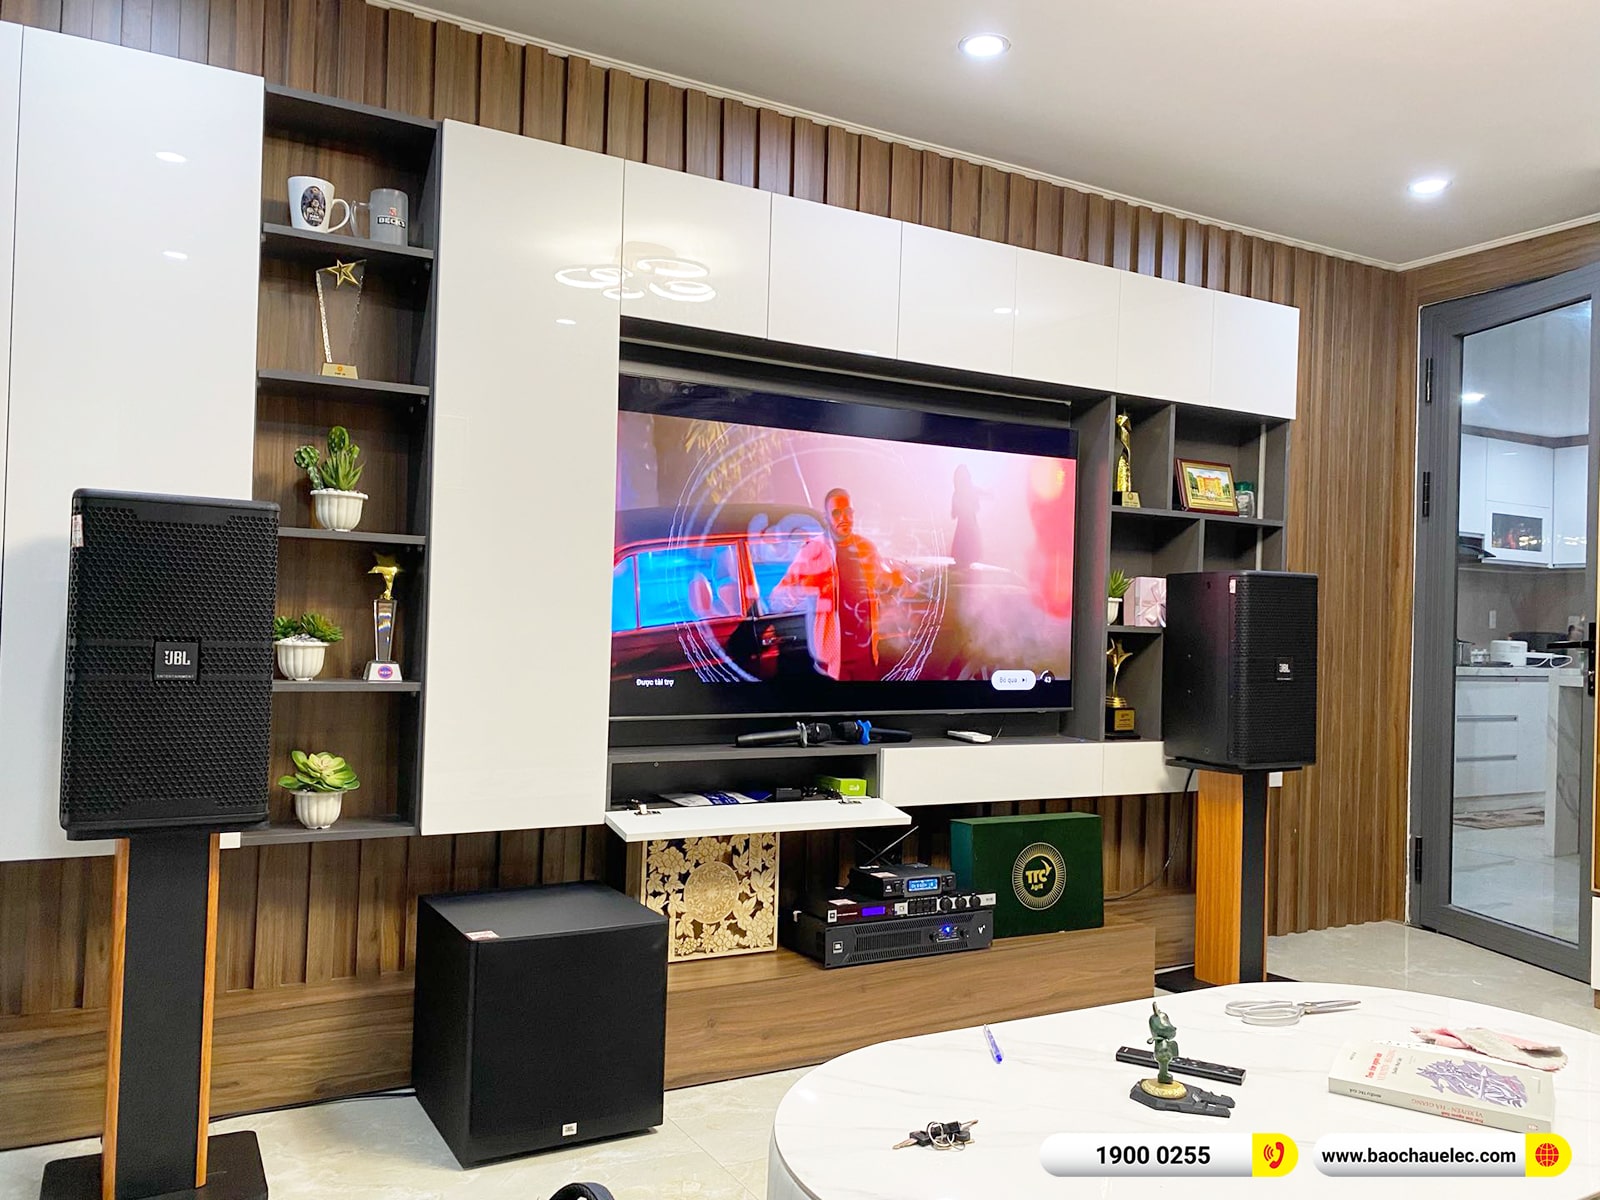 Lắp đặt dàn karaoke JBL hơn 65tr cho anh Linh tại Đồng Nai (JBL KP4010 G2, JBL V6, KX180A, A120P, VM300)